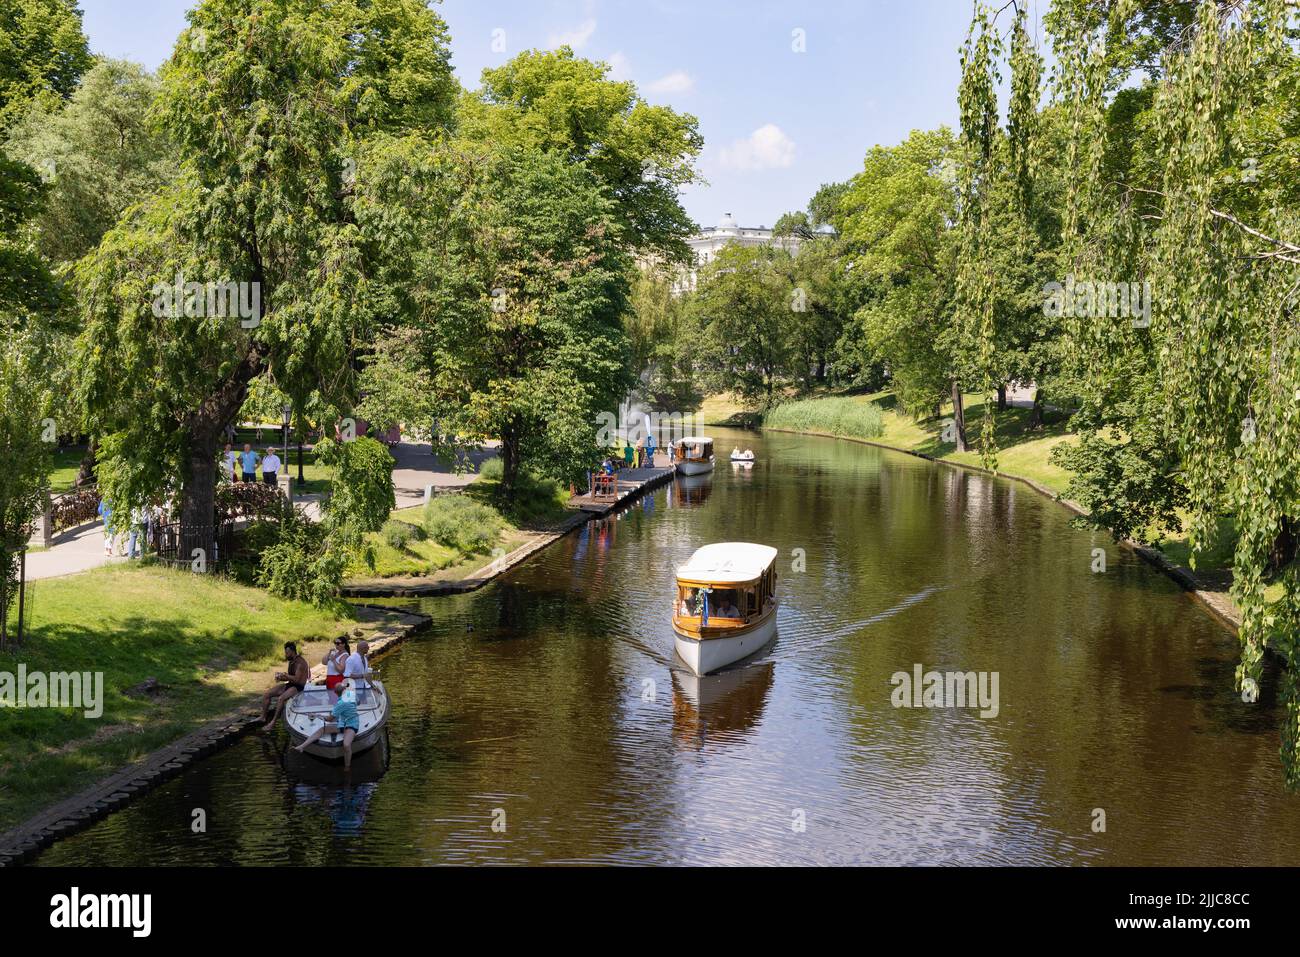 Riga Travel; Kanalboote auf dem Rigaer Kanal, die Touristen eine Besichtigungstour bieten, Rigaer Altstadt, Riga Lettland Europa Stockfoto